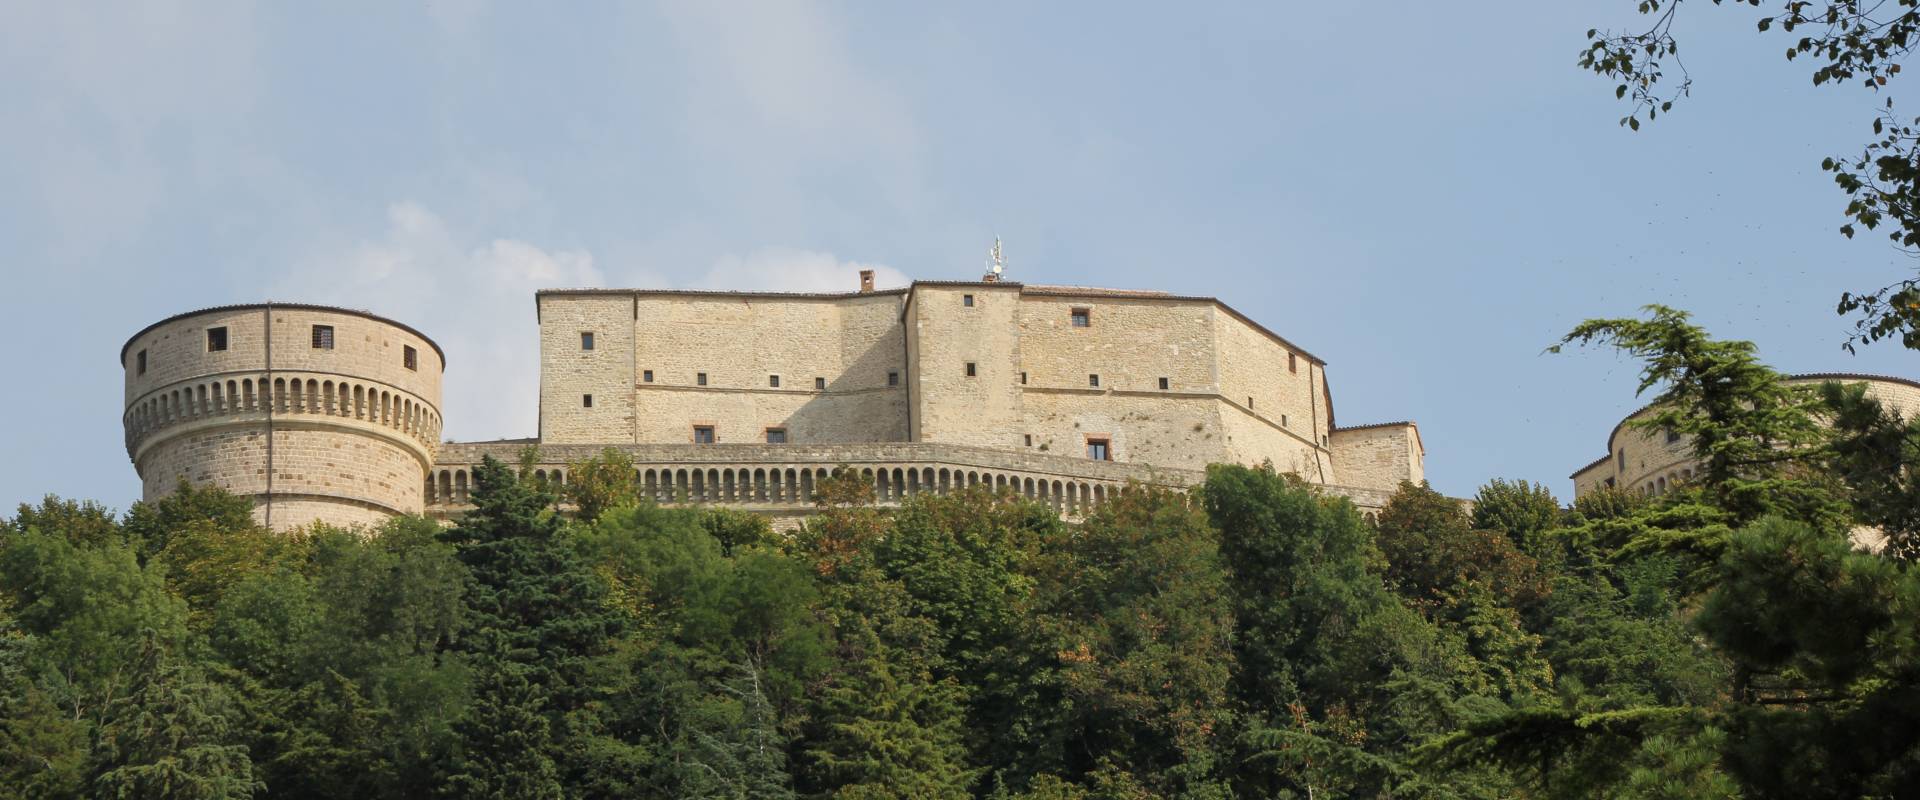 San Leo, forte di San Leo (11) foto di Gianni Careddu